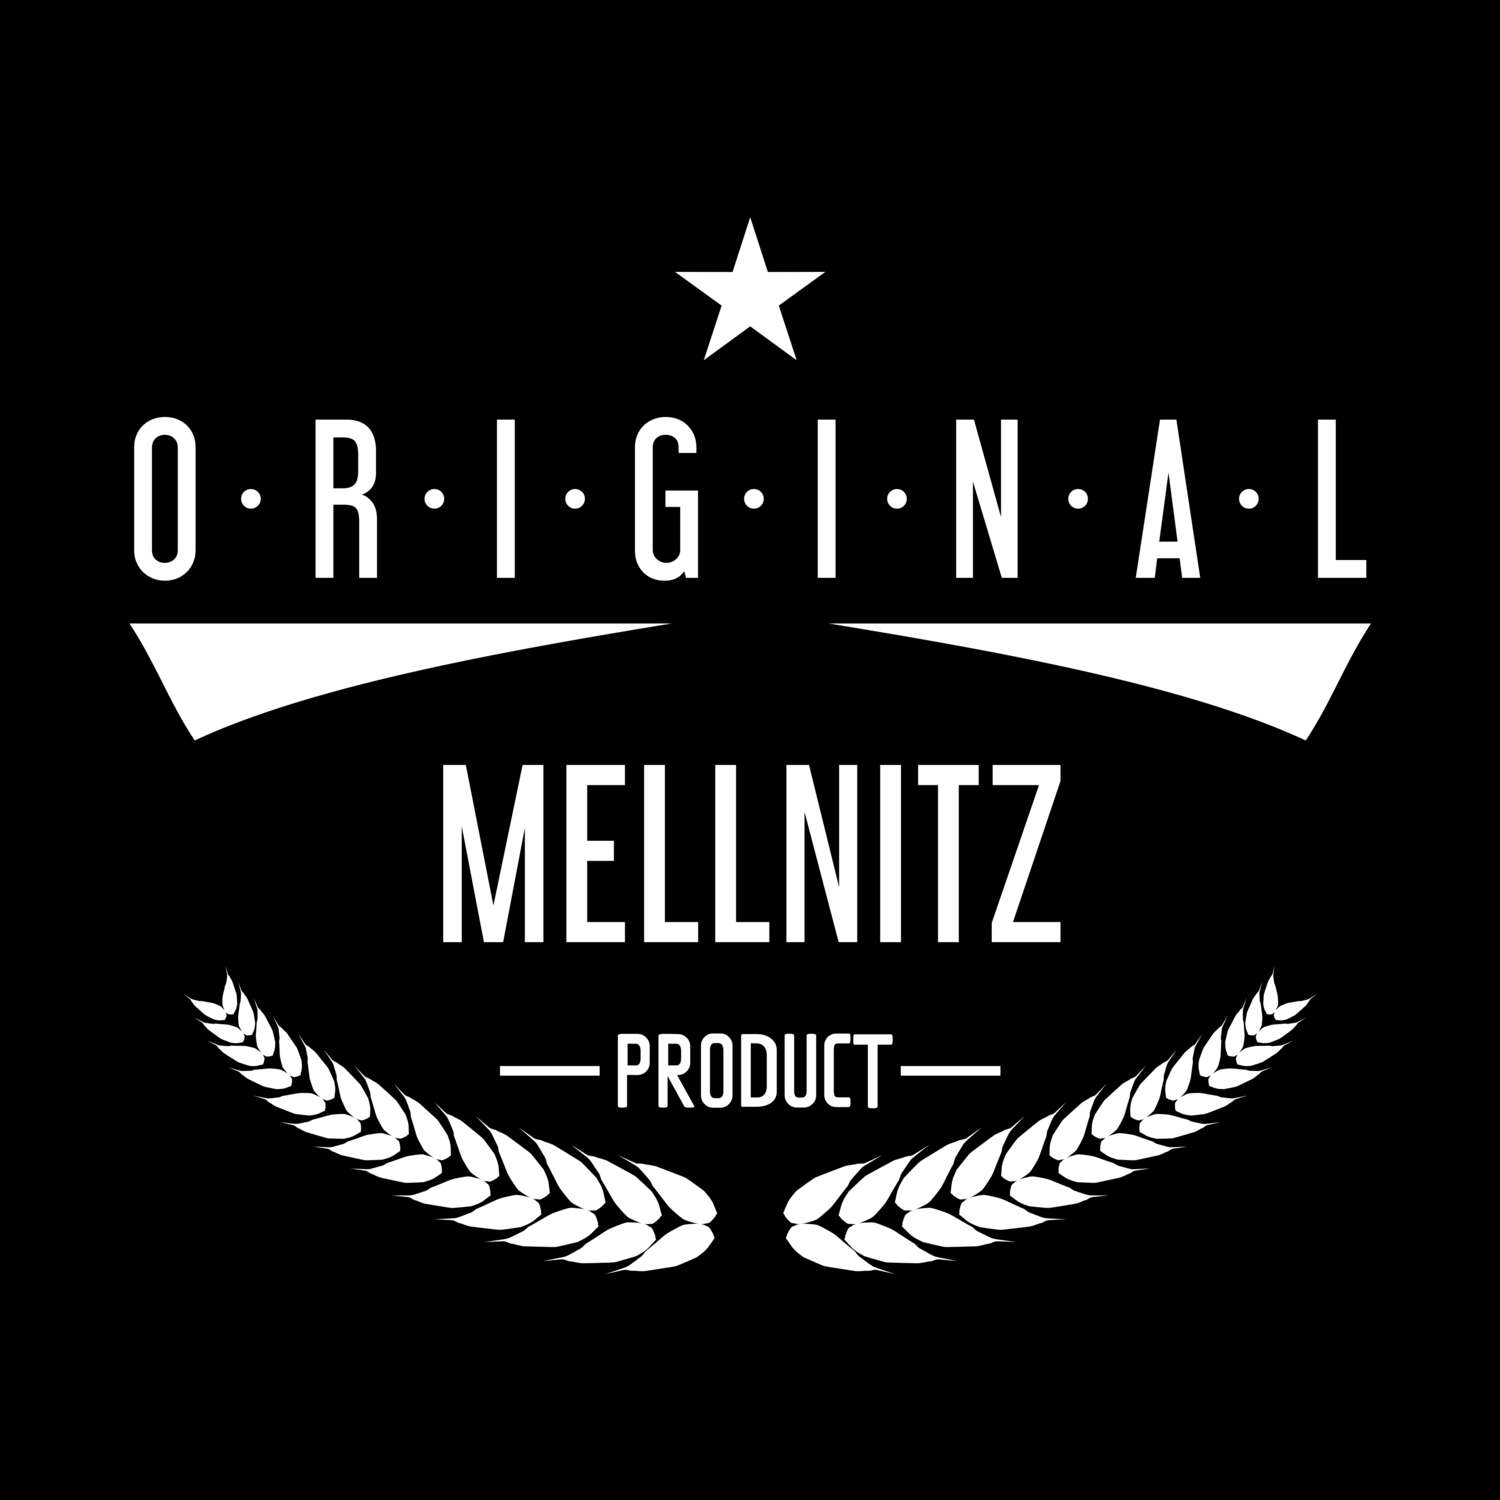 Mellnitz T-Shirt »Original Product«